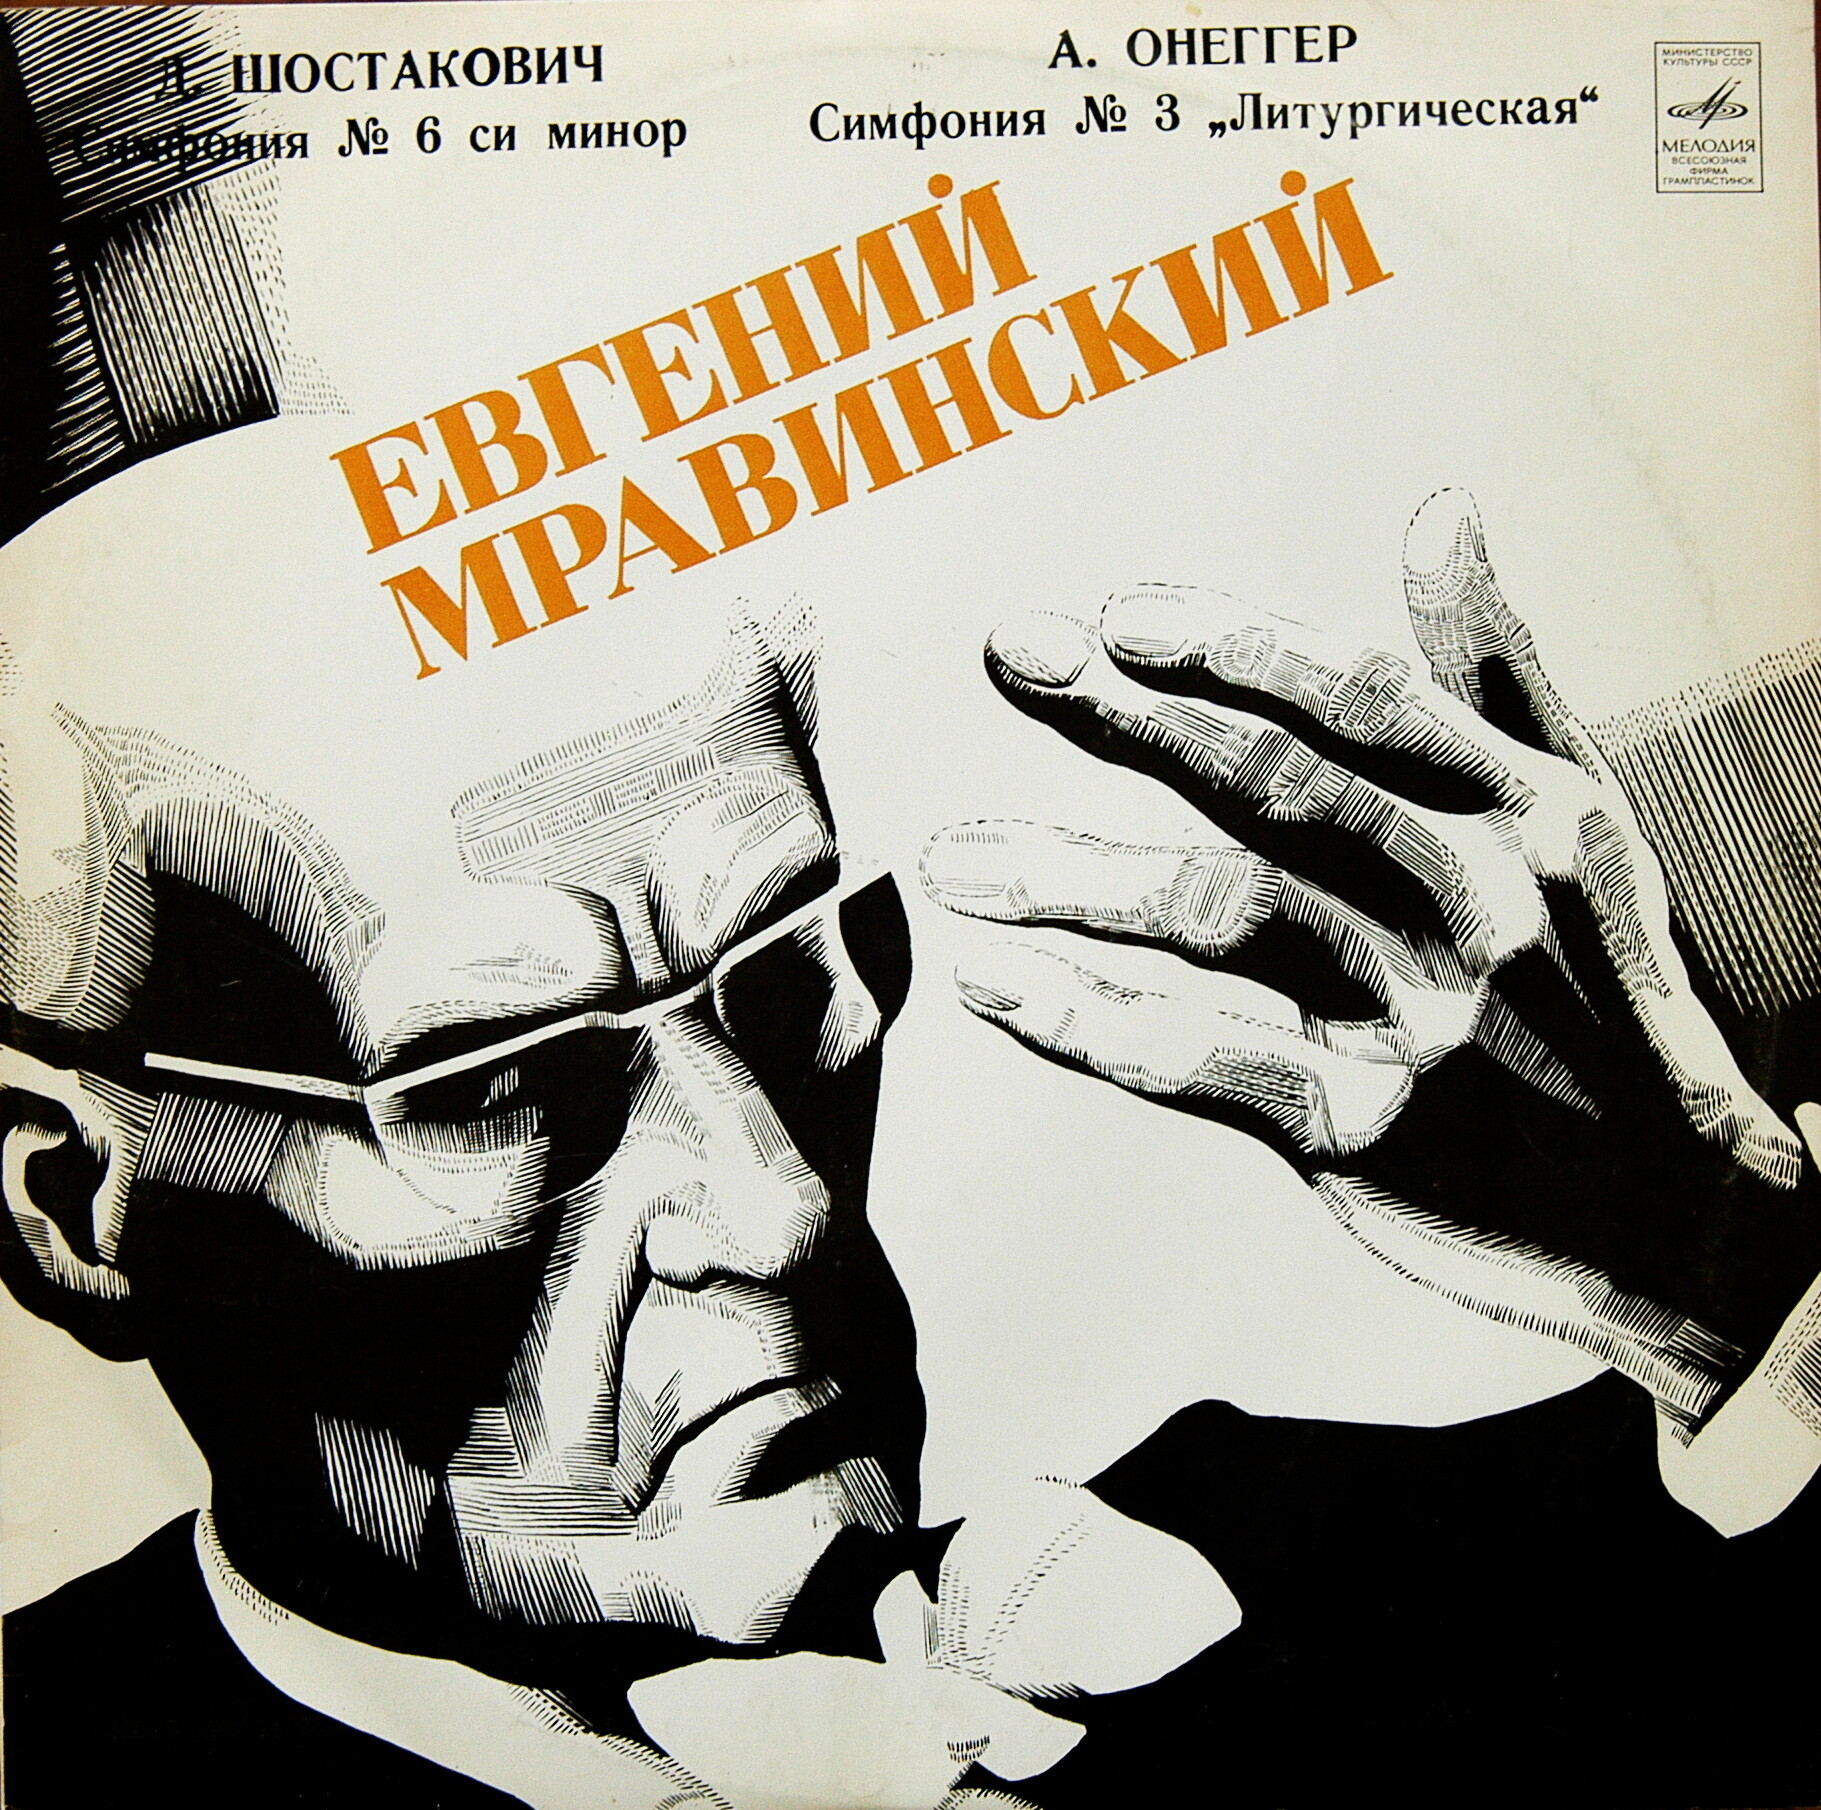 Д. Шостакович, А. Онеггер: Симфонии. Дирижирует Е. Мравинский